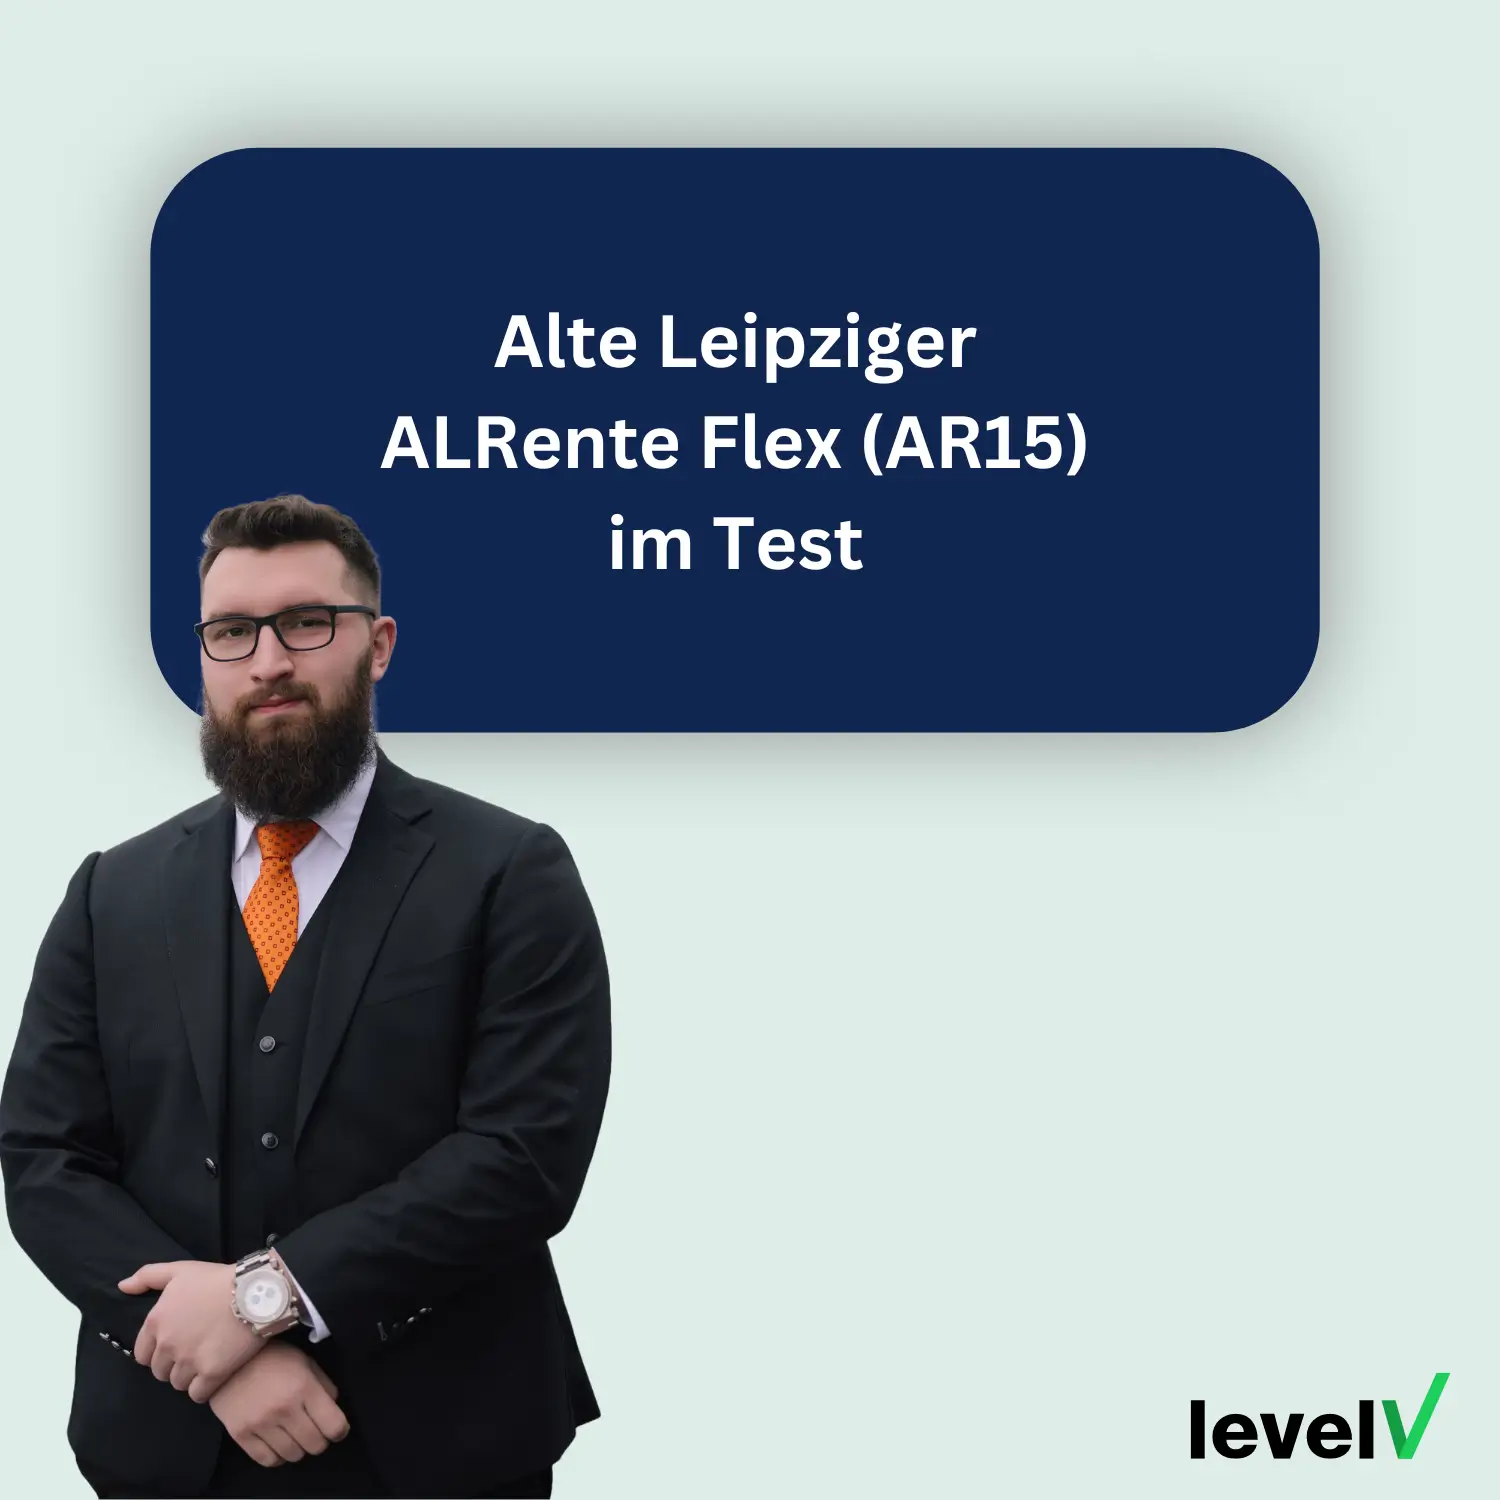 Alte Leipziger ALRente Flex (AR15) im Test